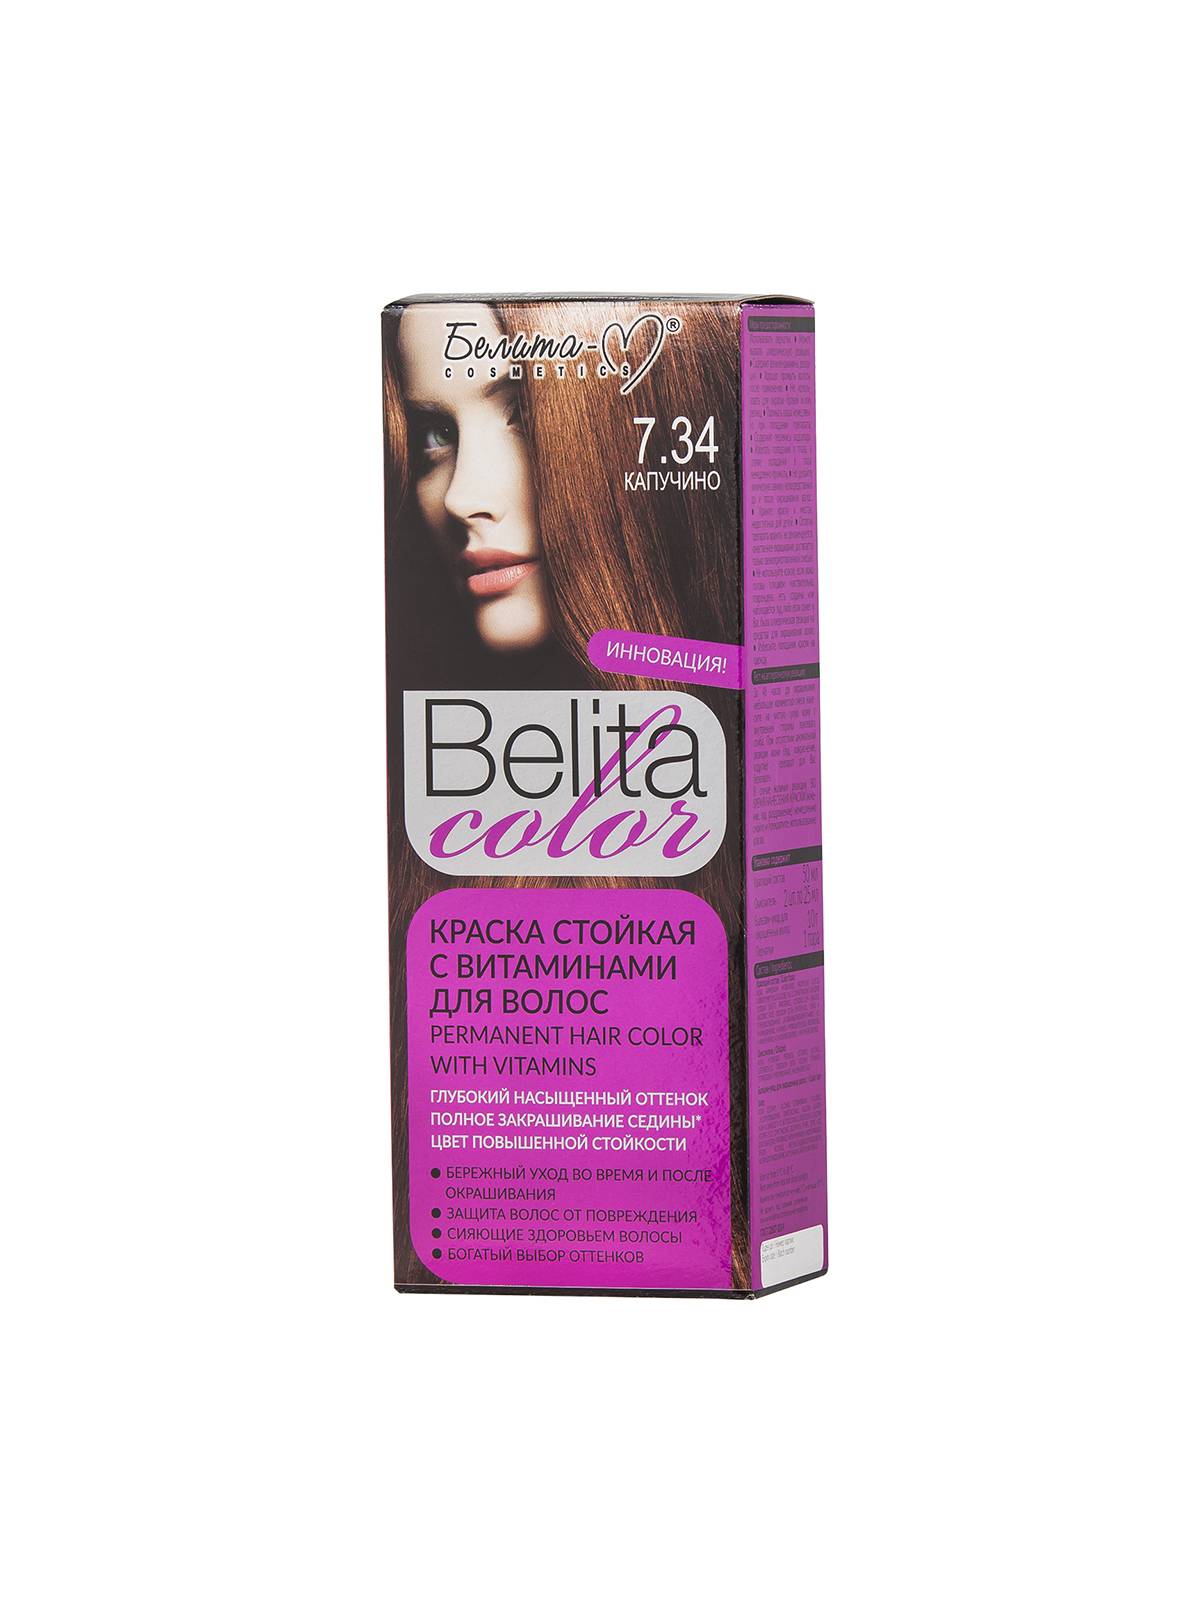 Краска стойкая с витаминами для волос серии "Belita сolor" № 7.34 Капучино (к-т)